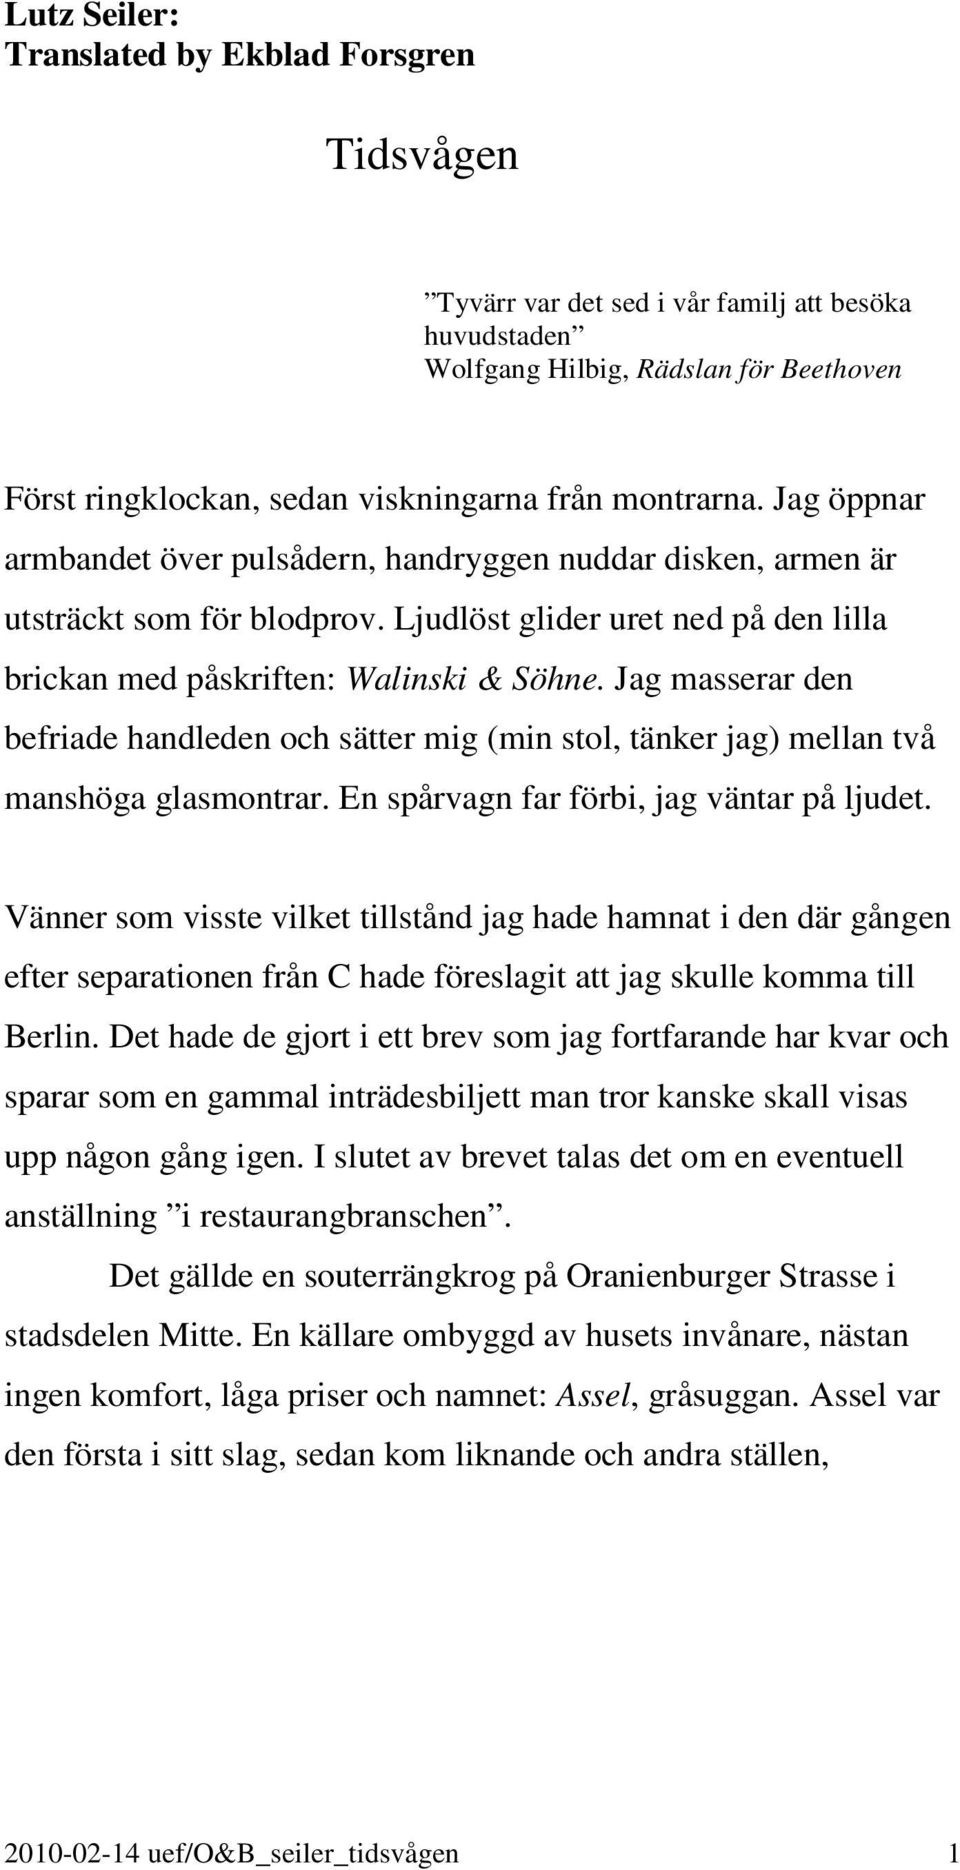 Tidsvågen. Lutz Seiler: Translated by Ekblad Forsgren - PDF Free Download